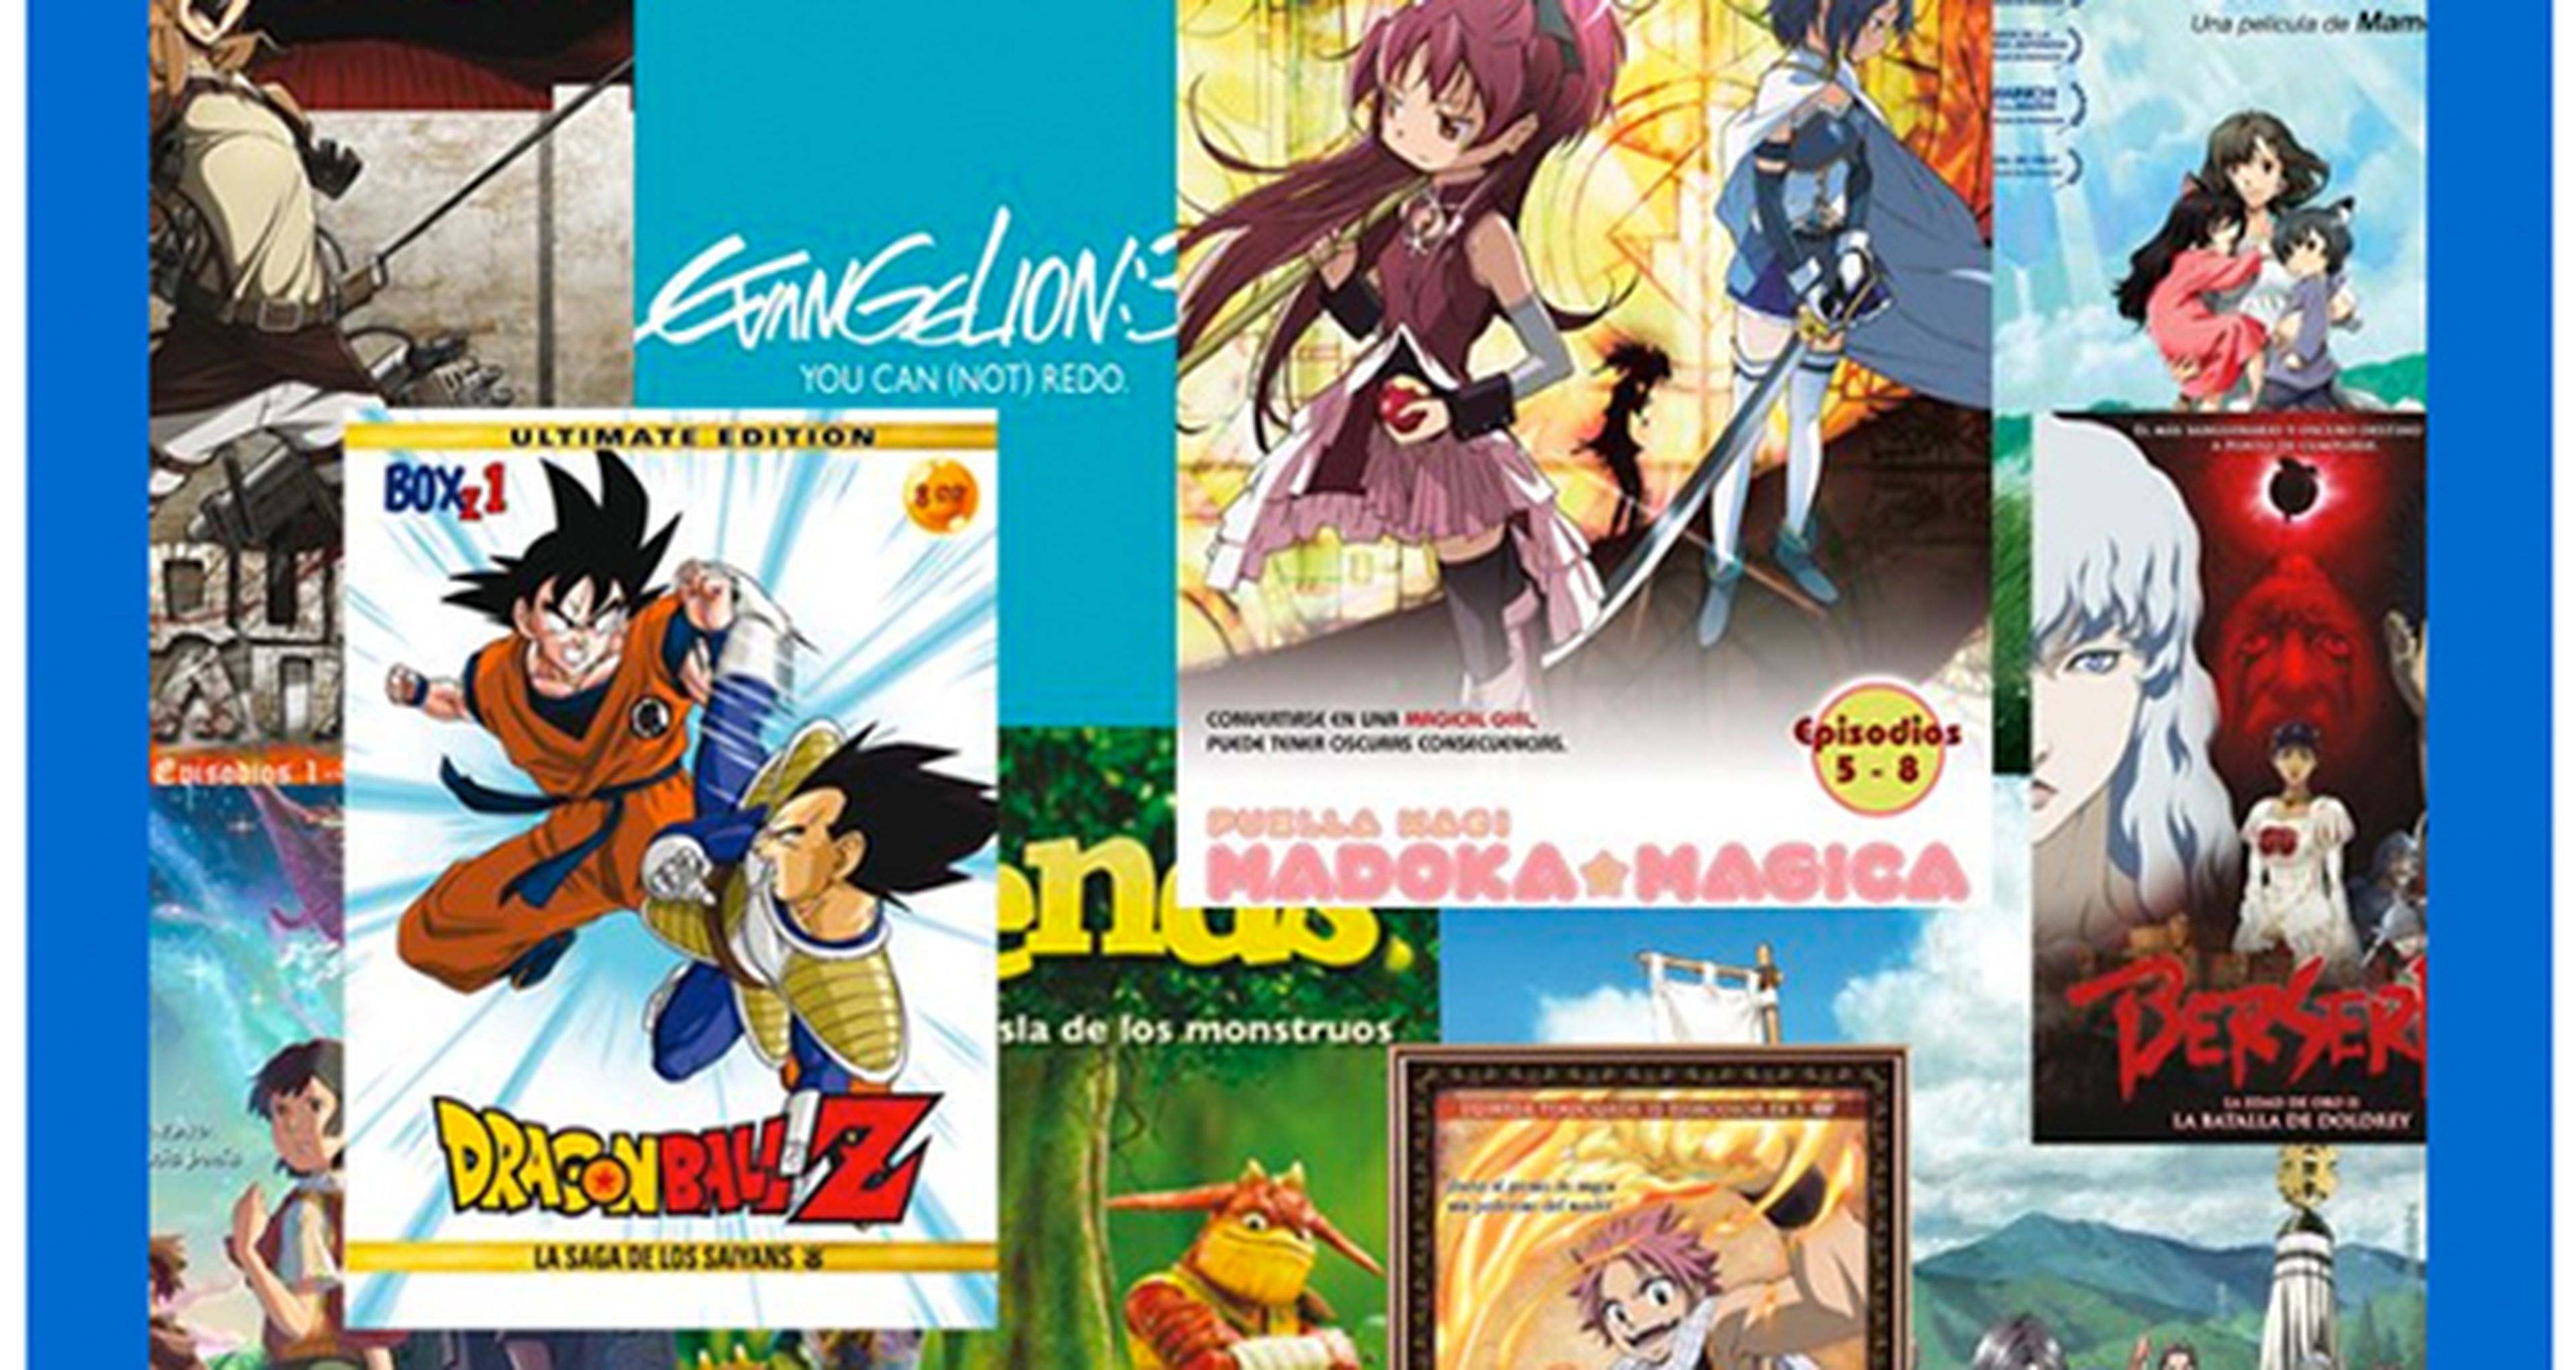 Elige los mejores animes y películas del 2013